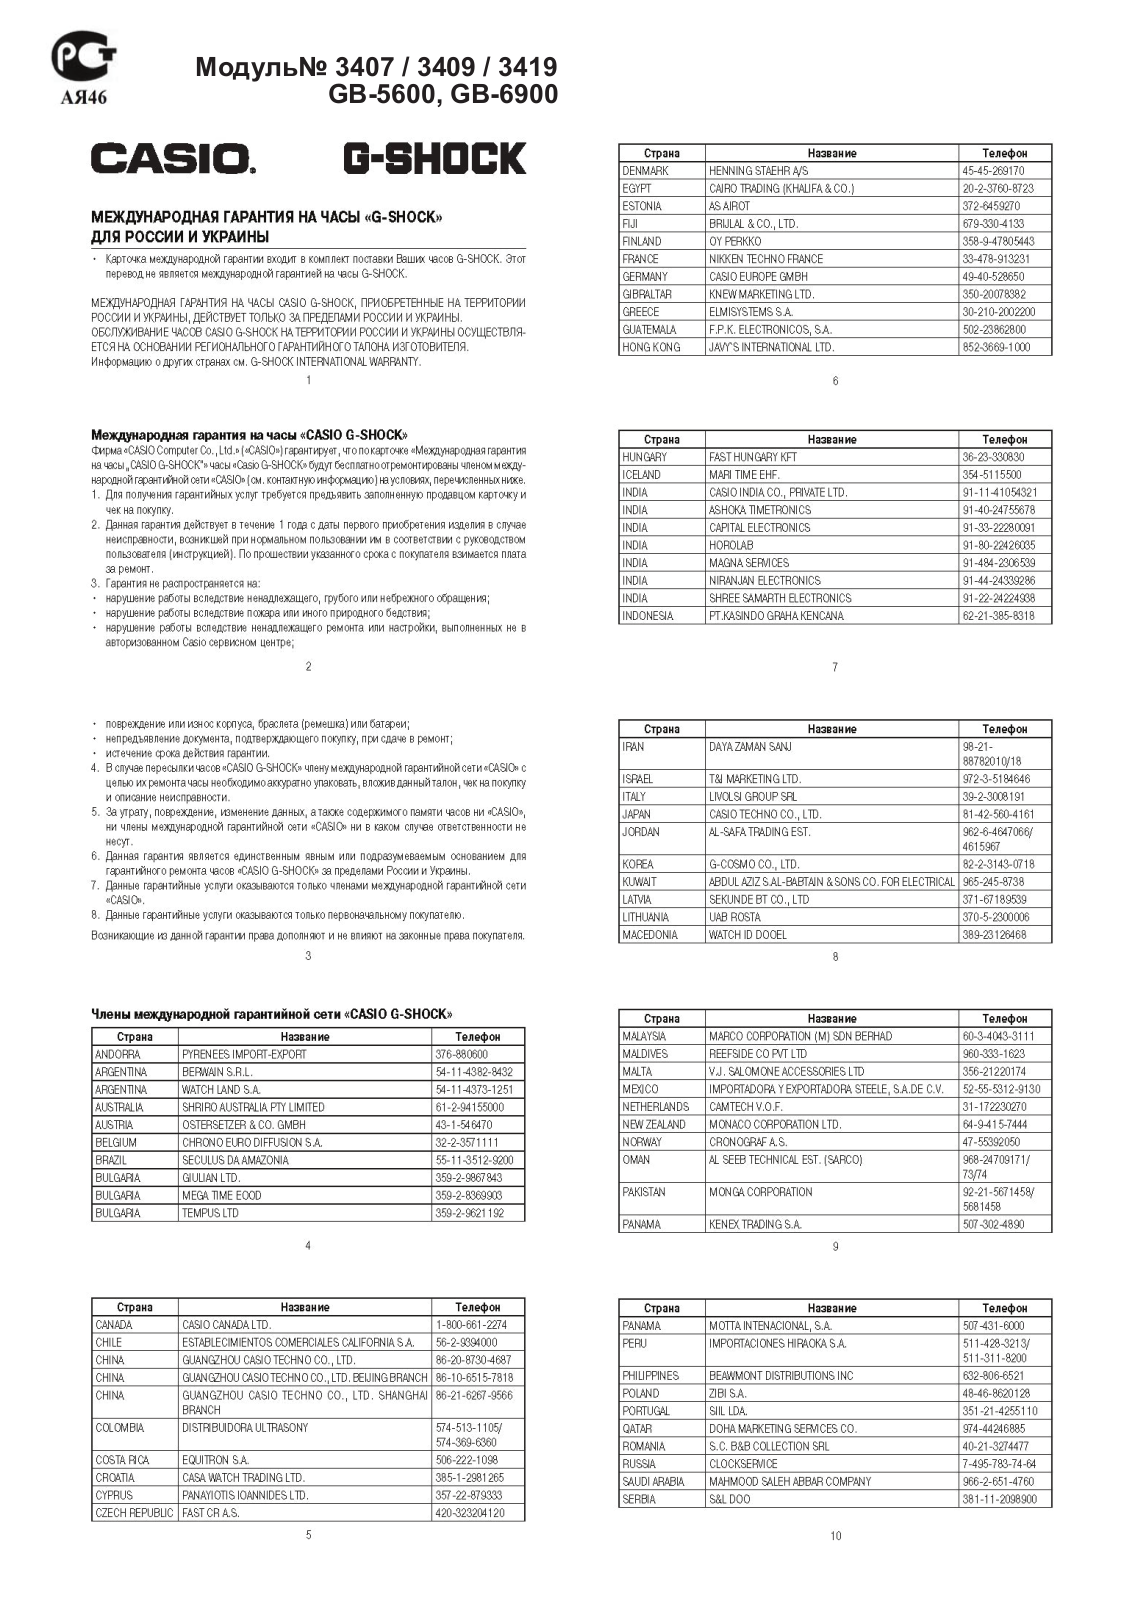 Casio GB-5600B-1B User Manual